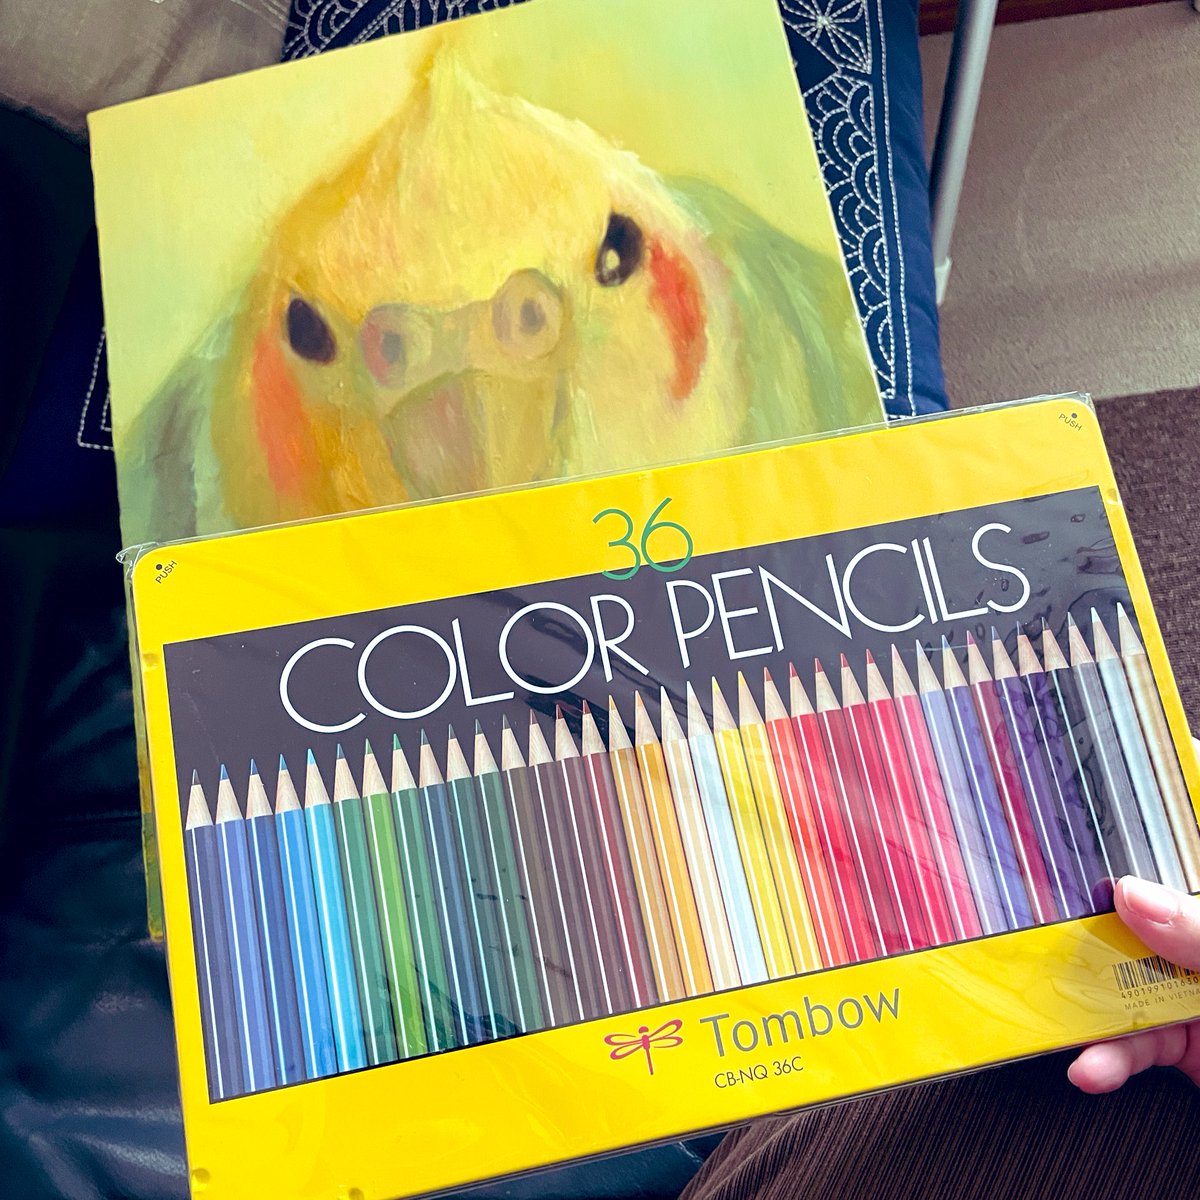 障害者アート協会から絵が帰って来た‼️
色鉛筆が入ってたよ☺️❤️
嬉しい❣️色鉛筆で、何か描こう😃❤️